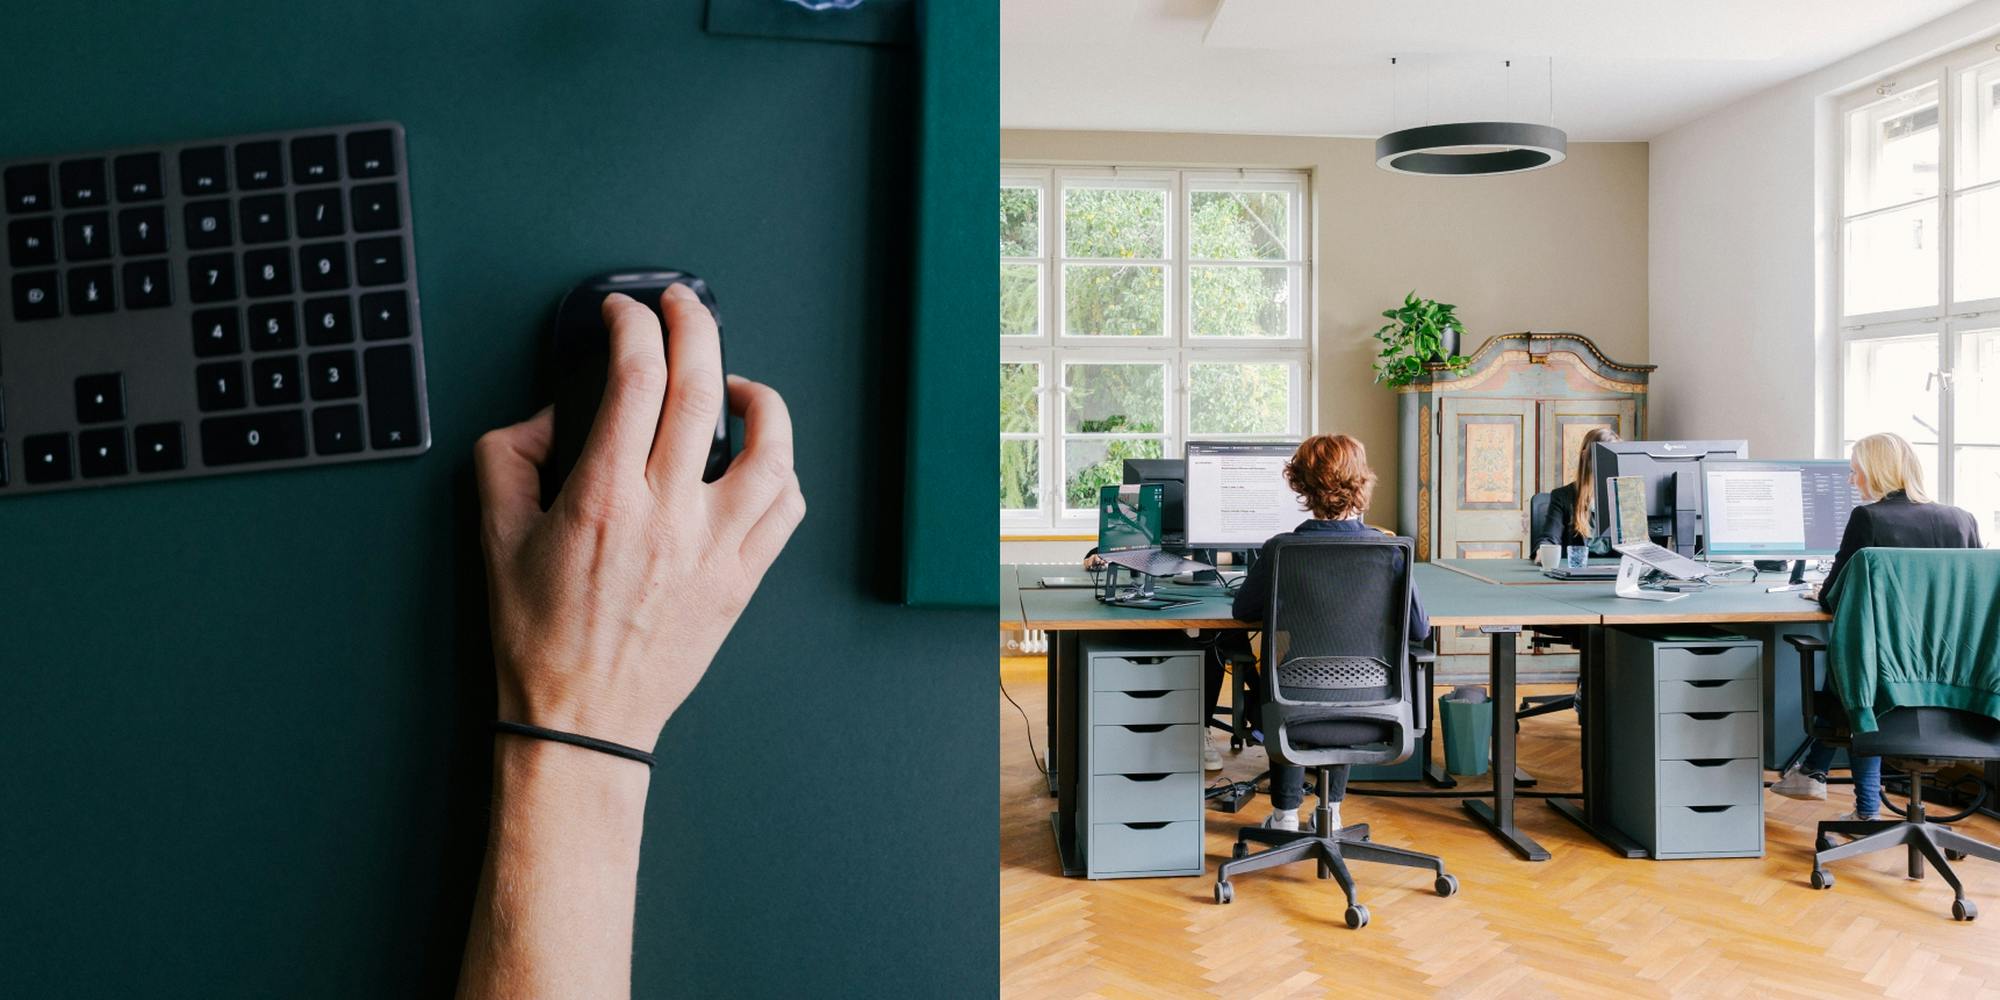 Bildkombination: Detailaufnahme Hände mit Maus und Tastatur auf grünem Tisch und Arbeitsplätze im Büro in der Gelben Fabrik © good matters